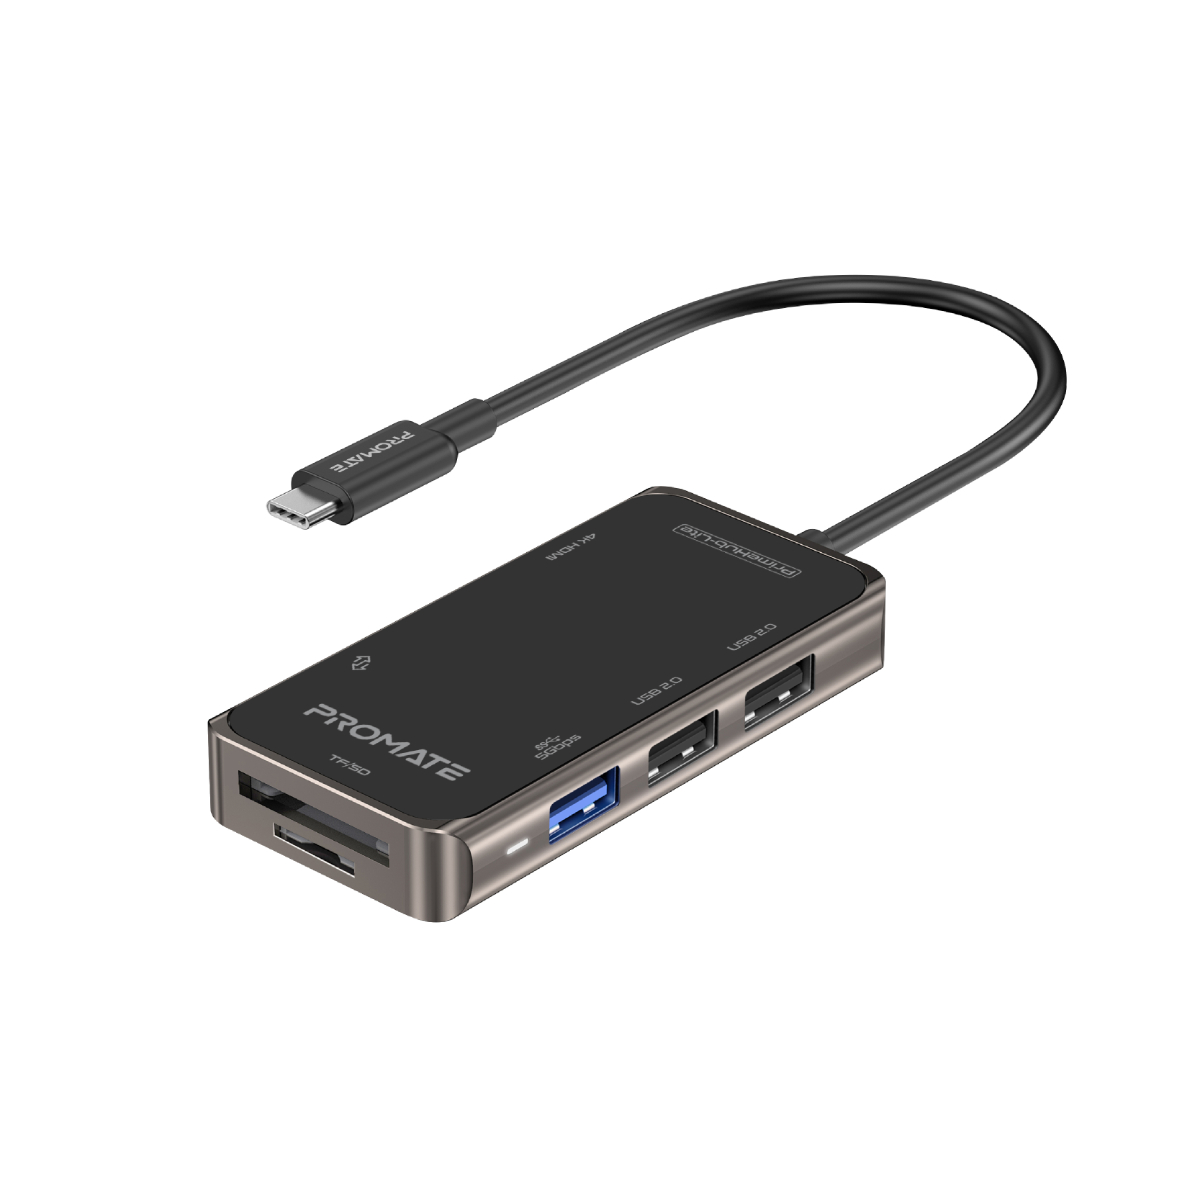 Promate USB-C Hub HDMI Adapter with 3 USB 3.0 Ports, 5Gbps Sync Charge and 4K HDMI 30hz Port, MediaHub-C3